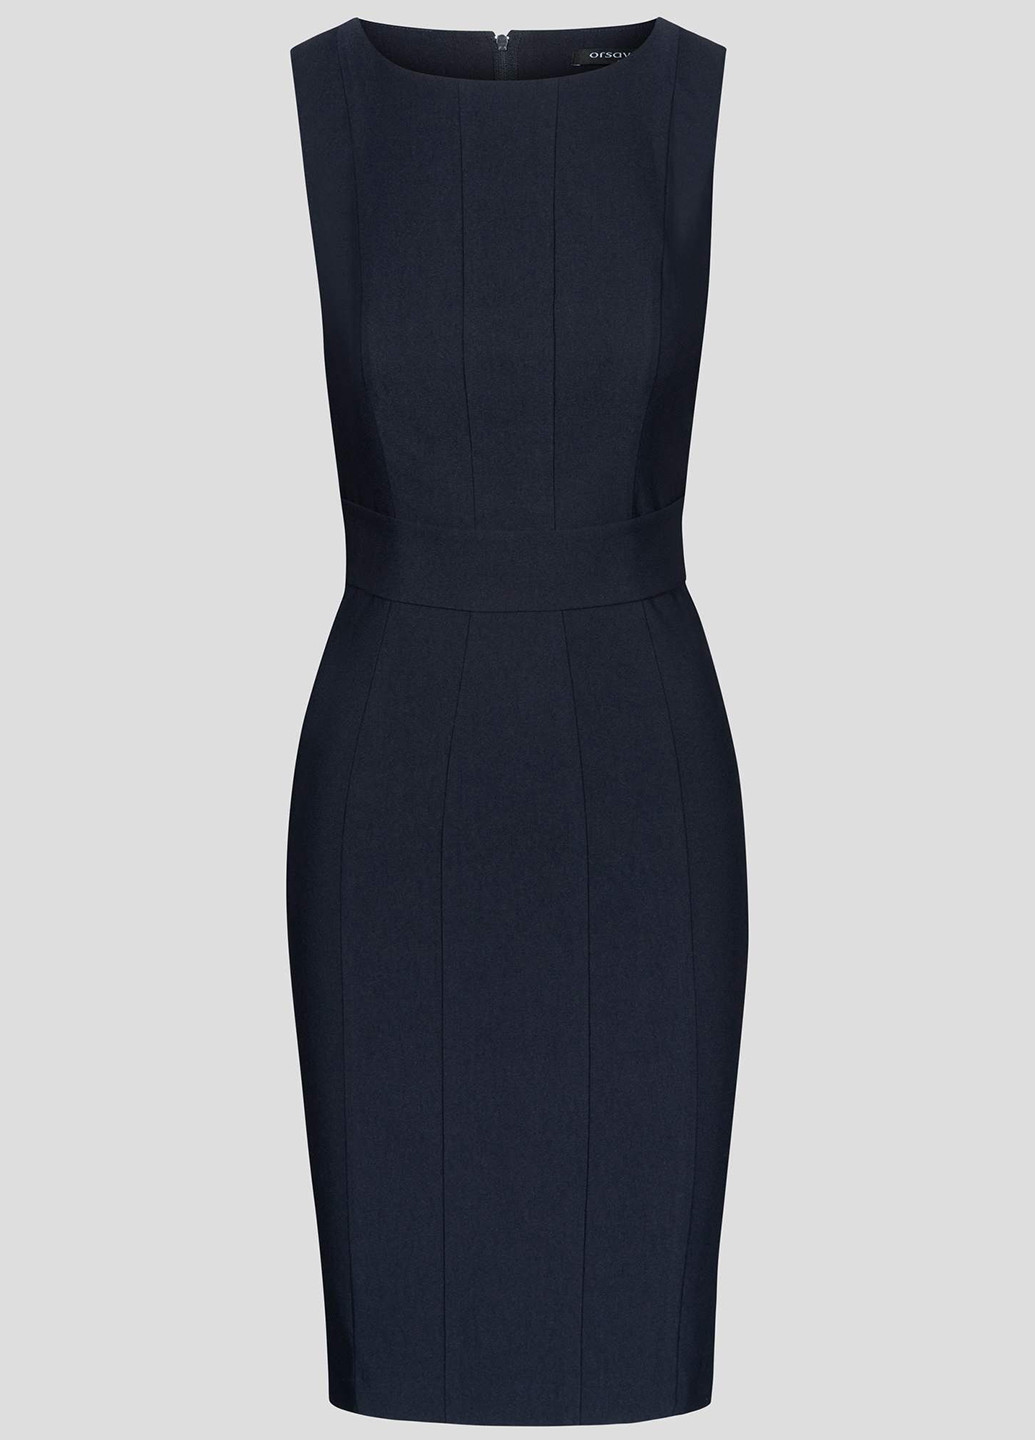 Темно-синее деловое платье футляр Orsay однотонное